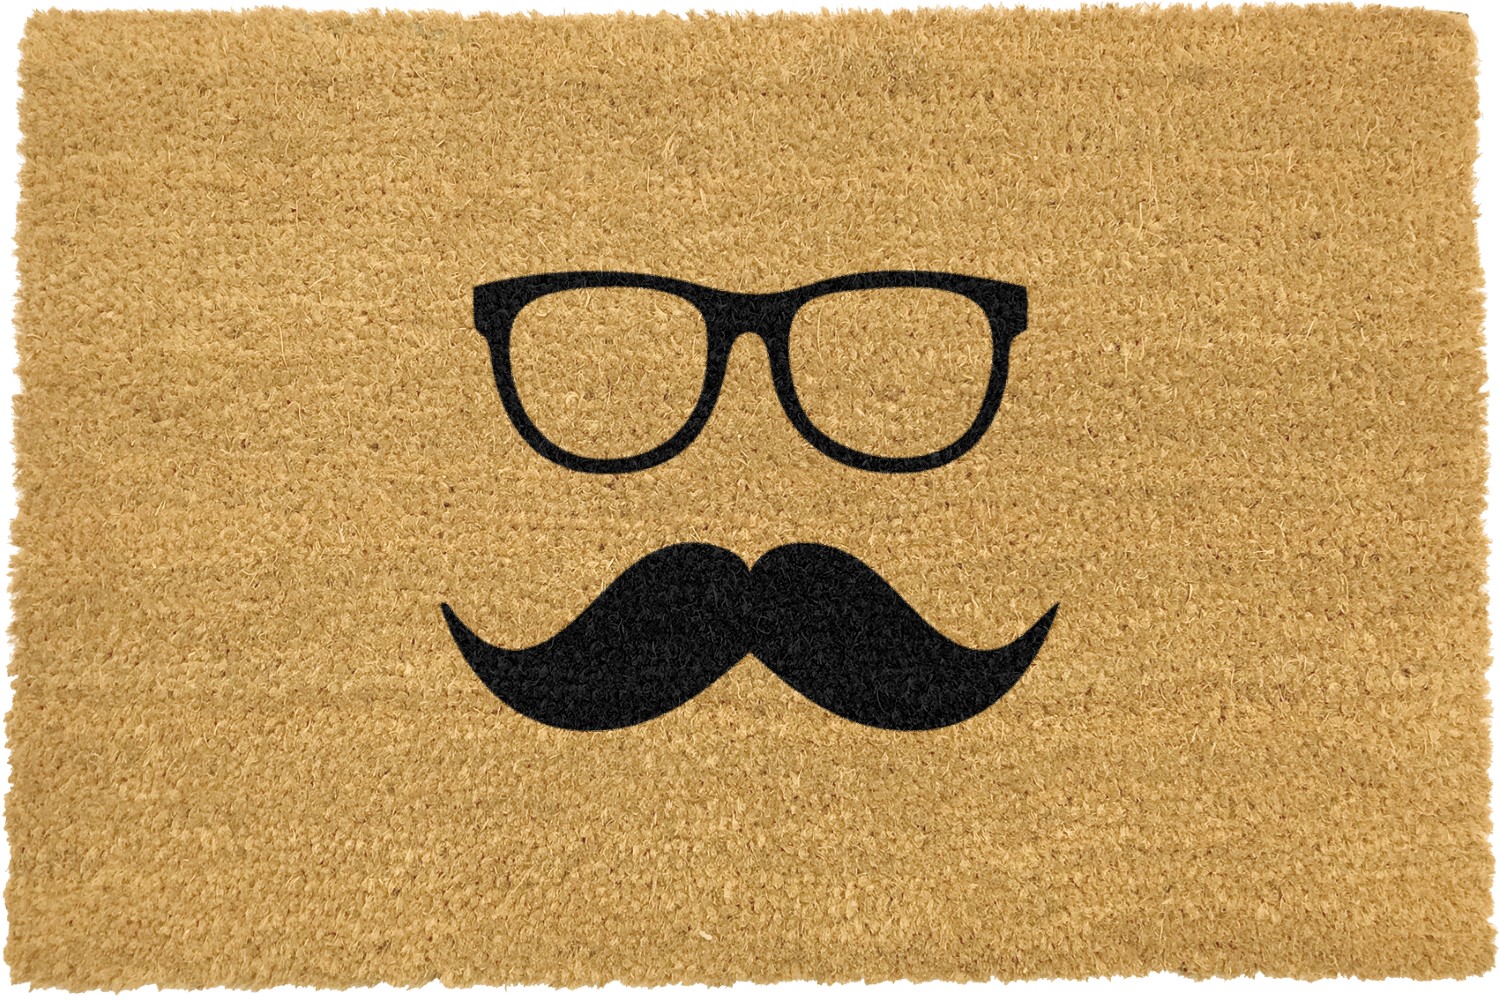 Asrty Doormats Mustache & Glasses